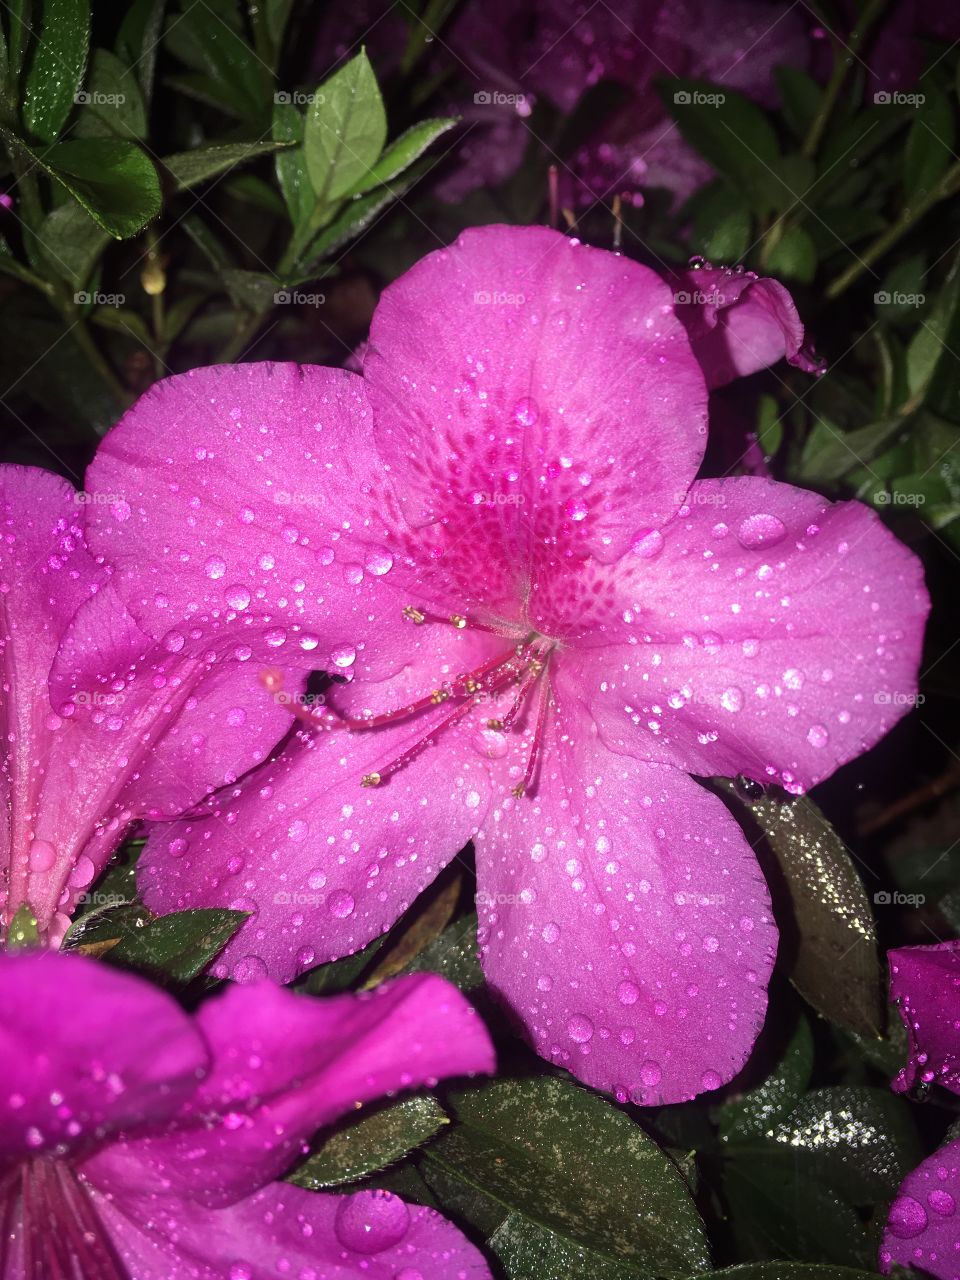 🇺🇸 Our azaleas dripped by the rain of dawn!  The wet petals and their vibrant colors are incredible ... / 🇧🇷 Nossas azaleias gotejadas pela chuva da madrugada! As pétalas molhadas e suas cores vibrantes são incríveis...